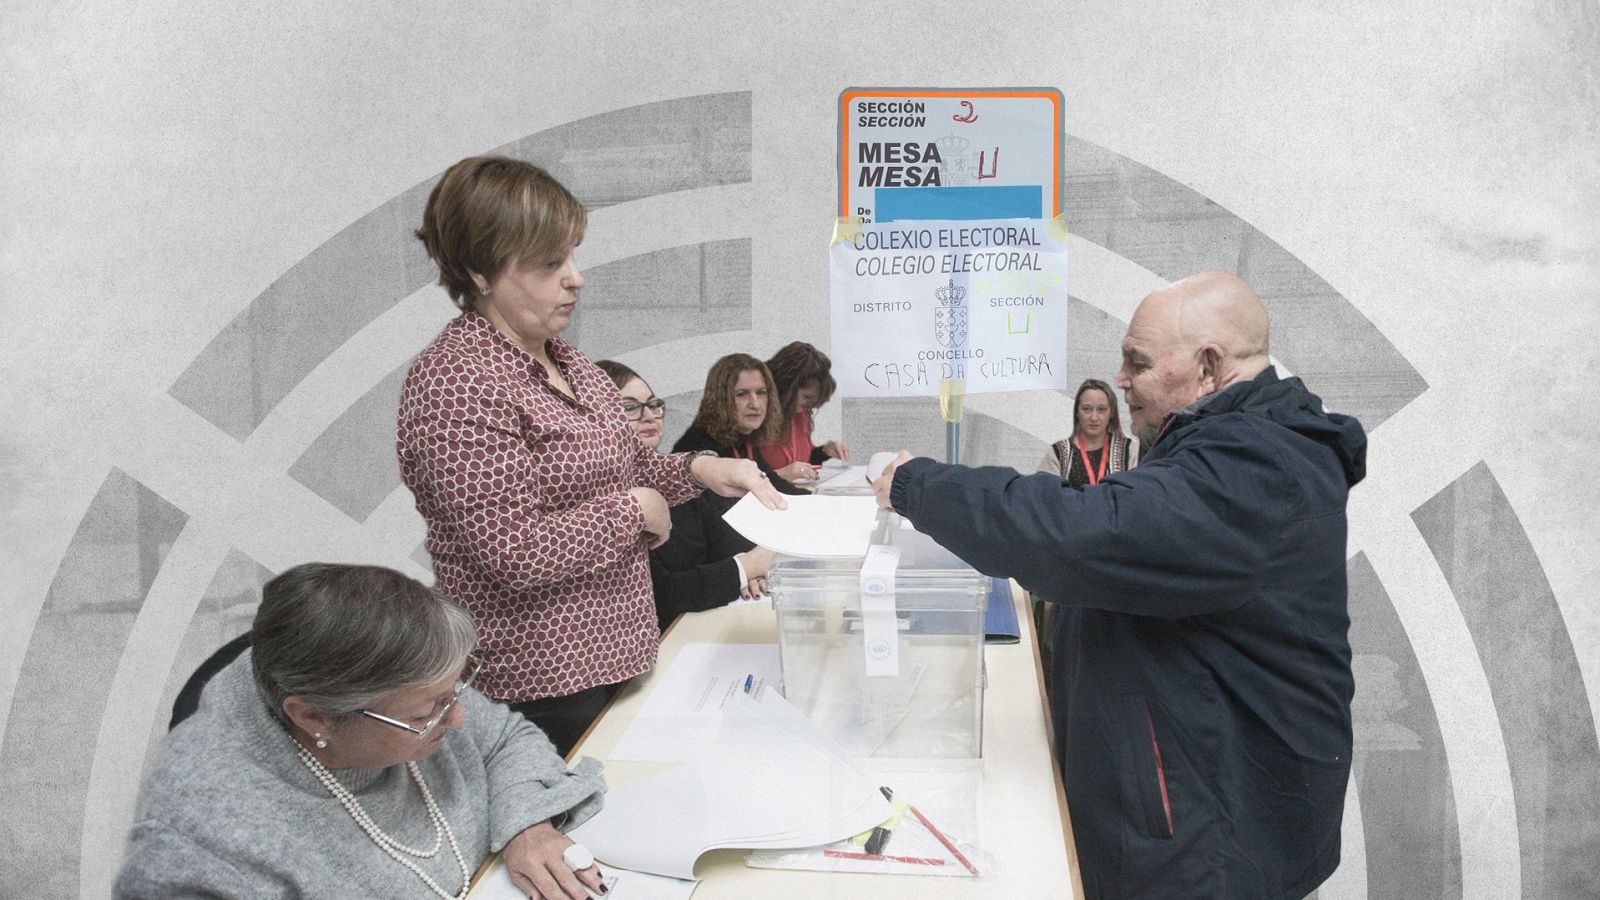 Sigue la actualidad de la jornada electoral en RTVE.es